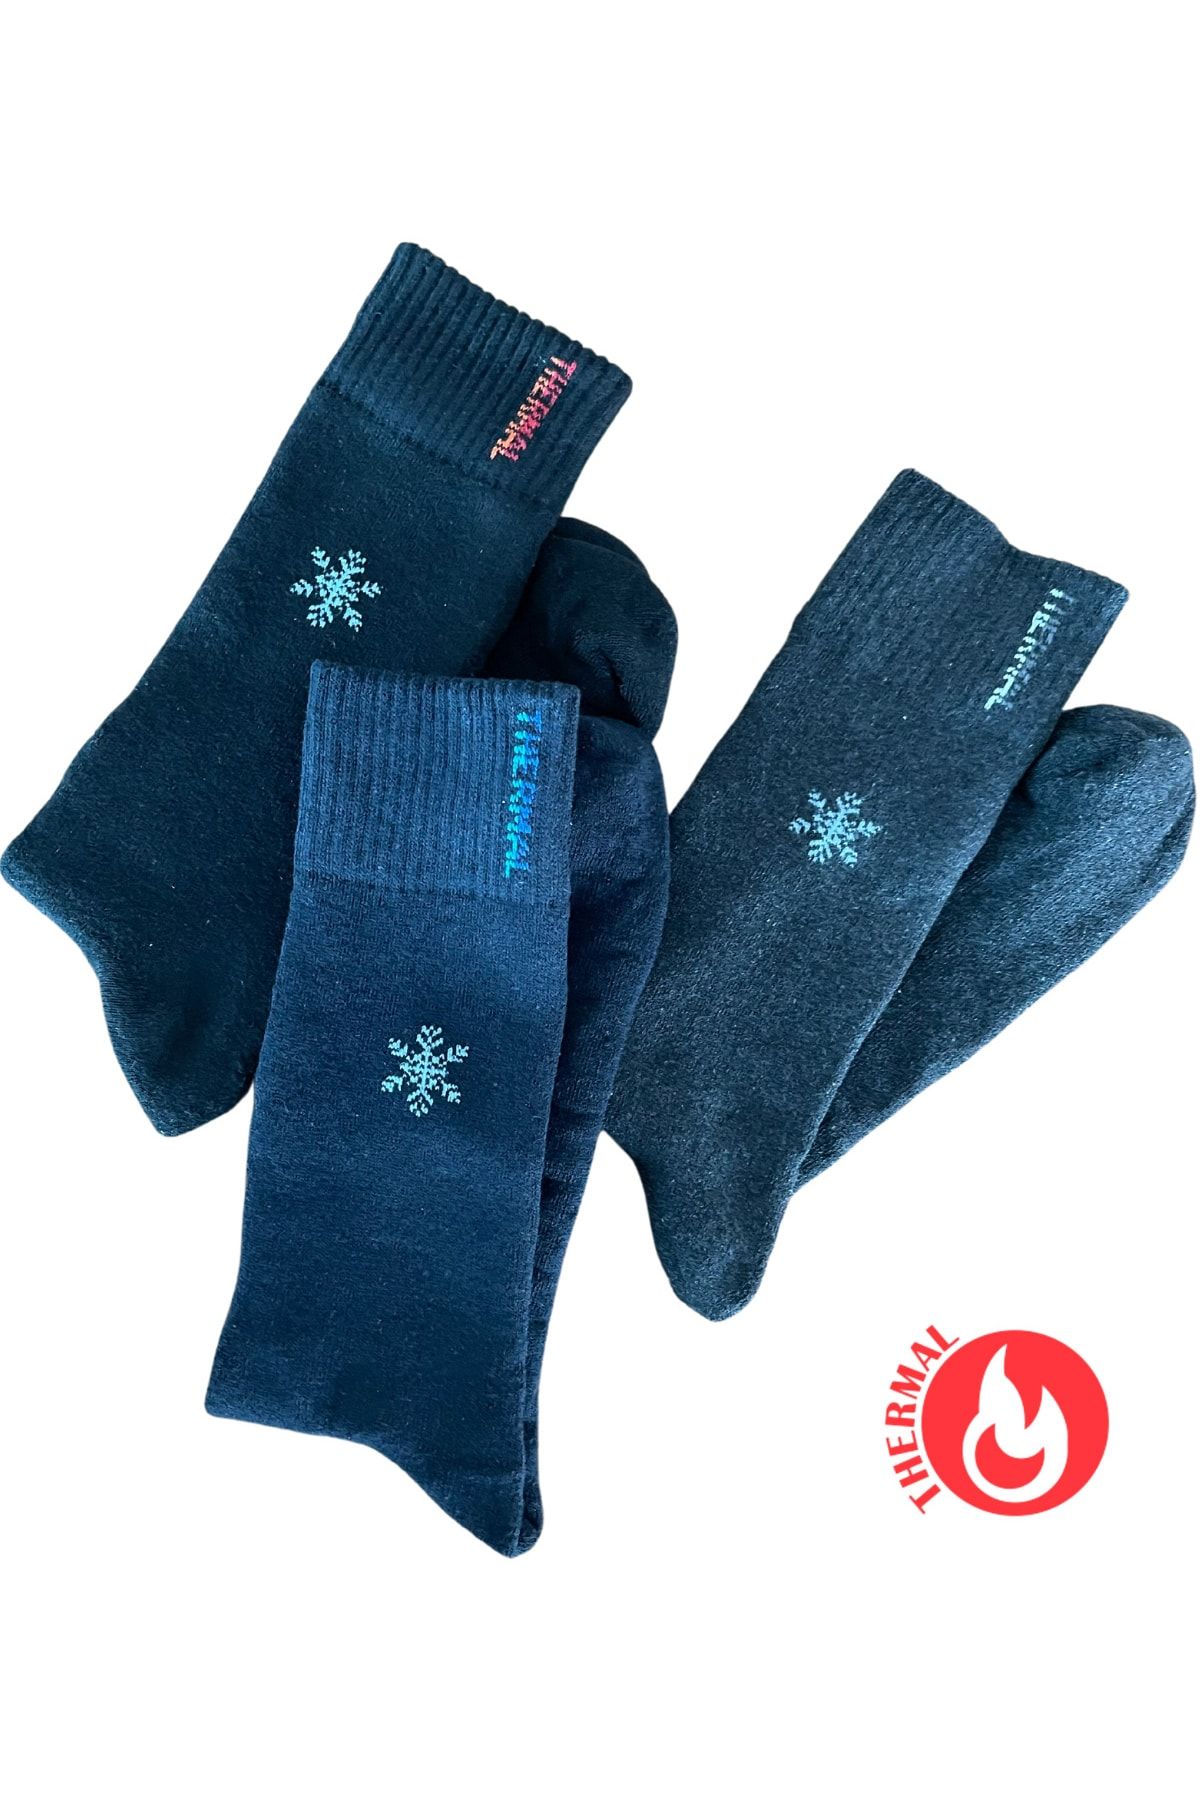 socksbox 3 Çift Uzun Konç Termal Dikişsiz Kışlık Çorap/siyah-lacivert-füme